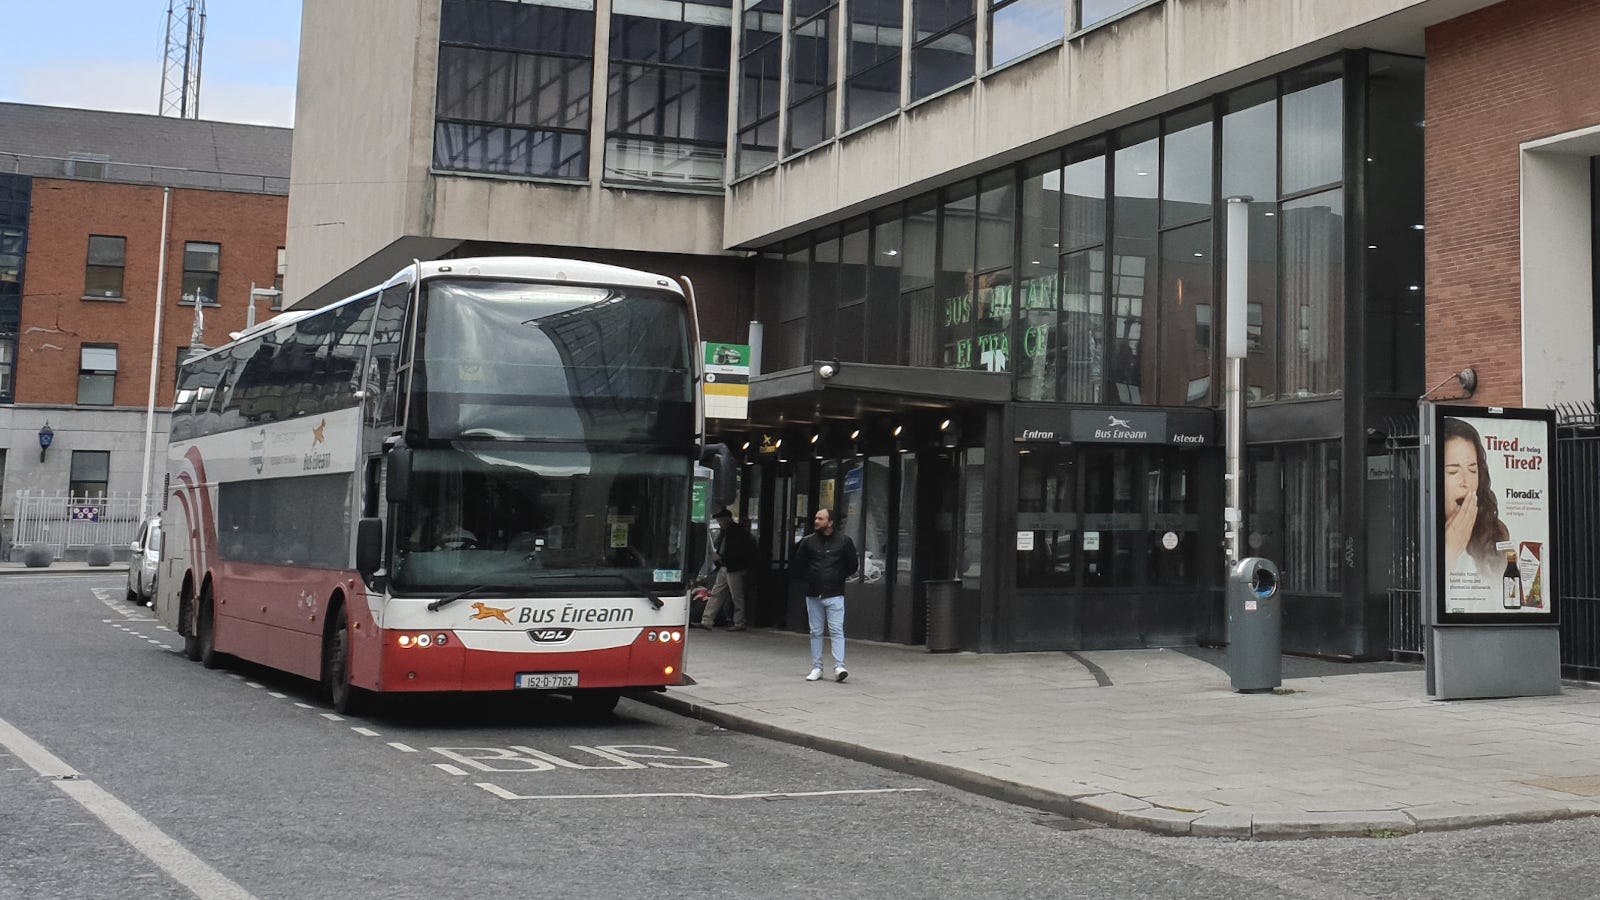 Bus Éireann bus at Busáras, Dublin ©Donnacha DeLong